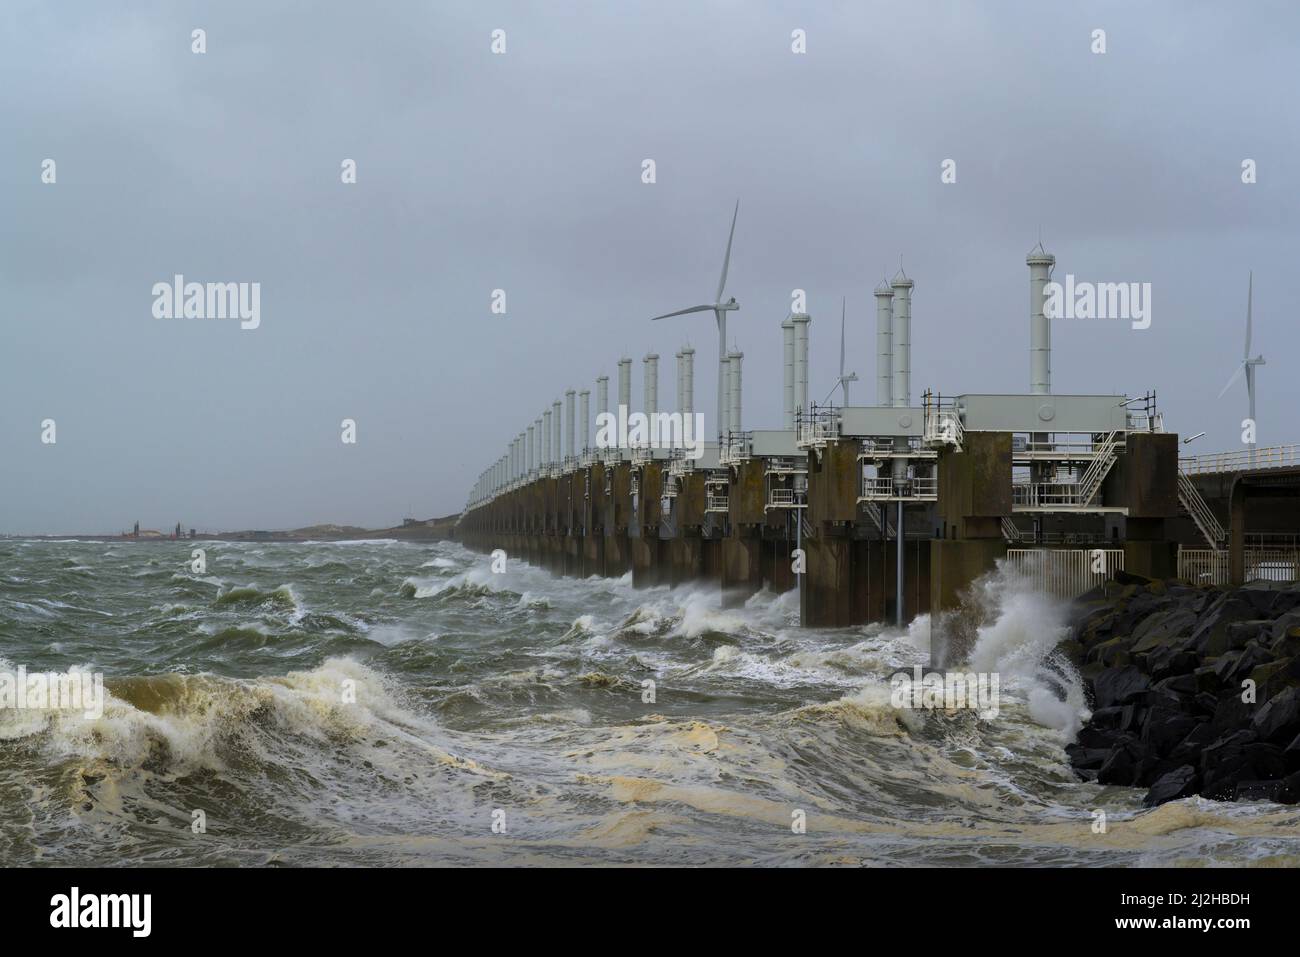 Holanda, Vrouwenpolder, olas del mar rompiendo contra el muelle durante la tormenta Corrie Foto de stock